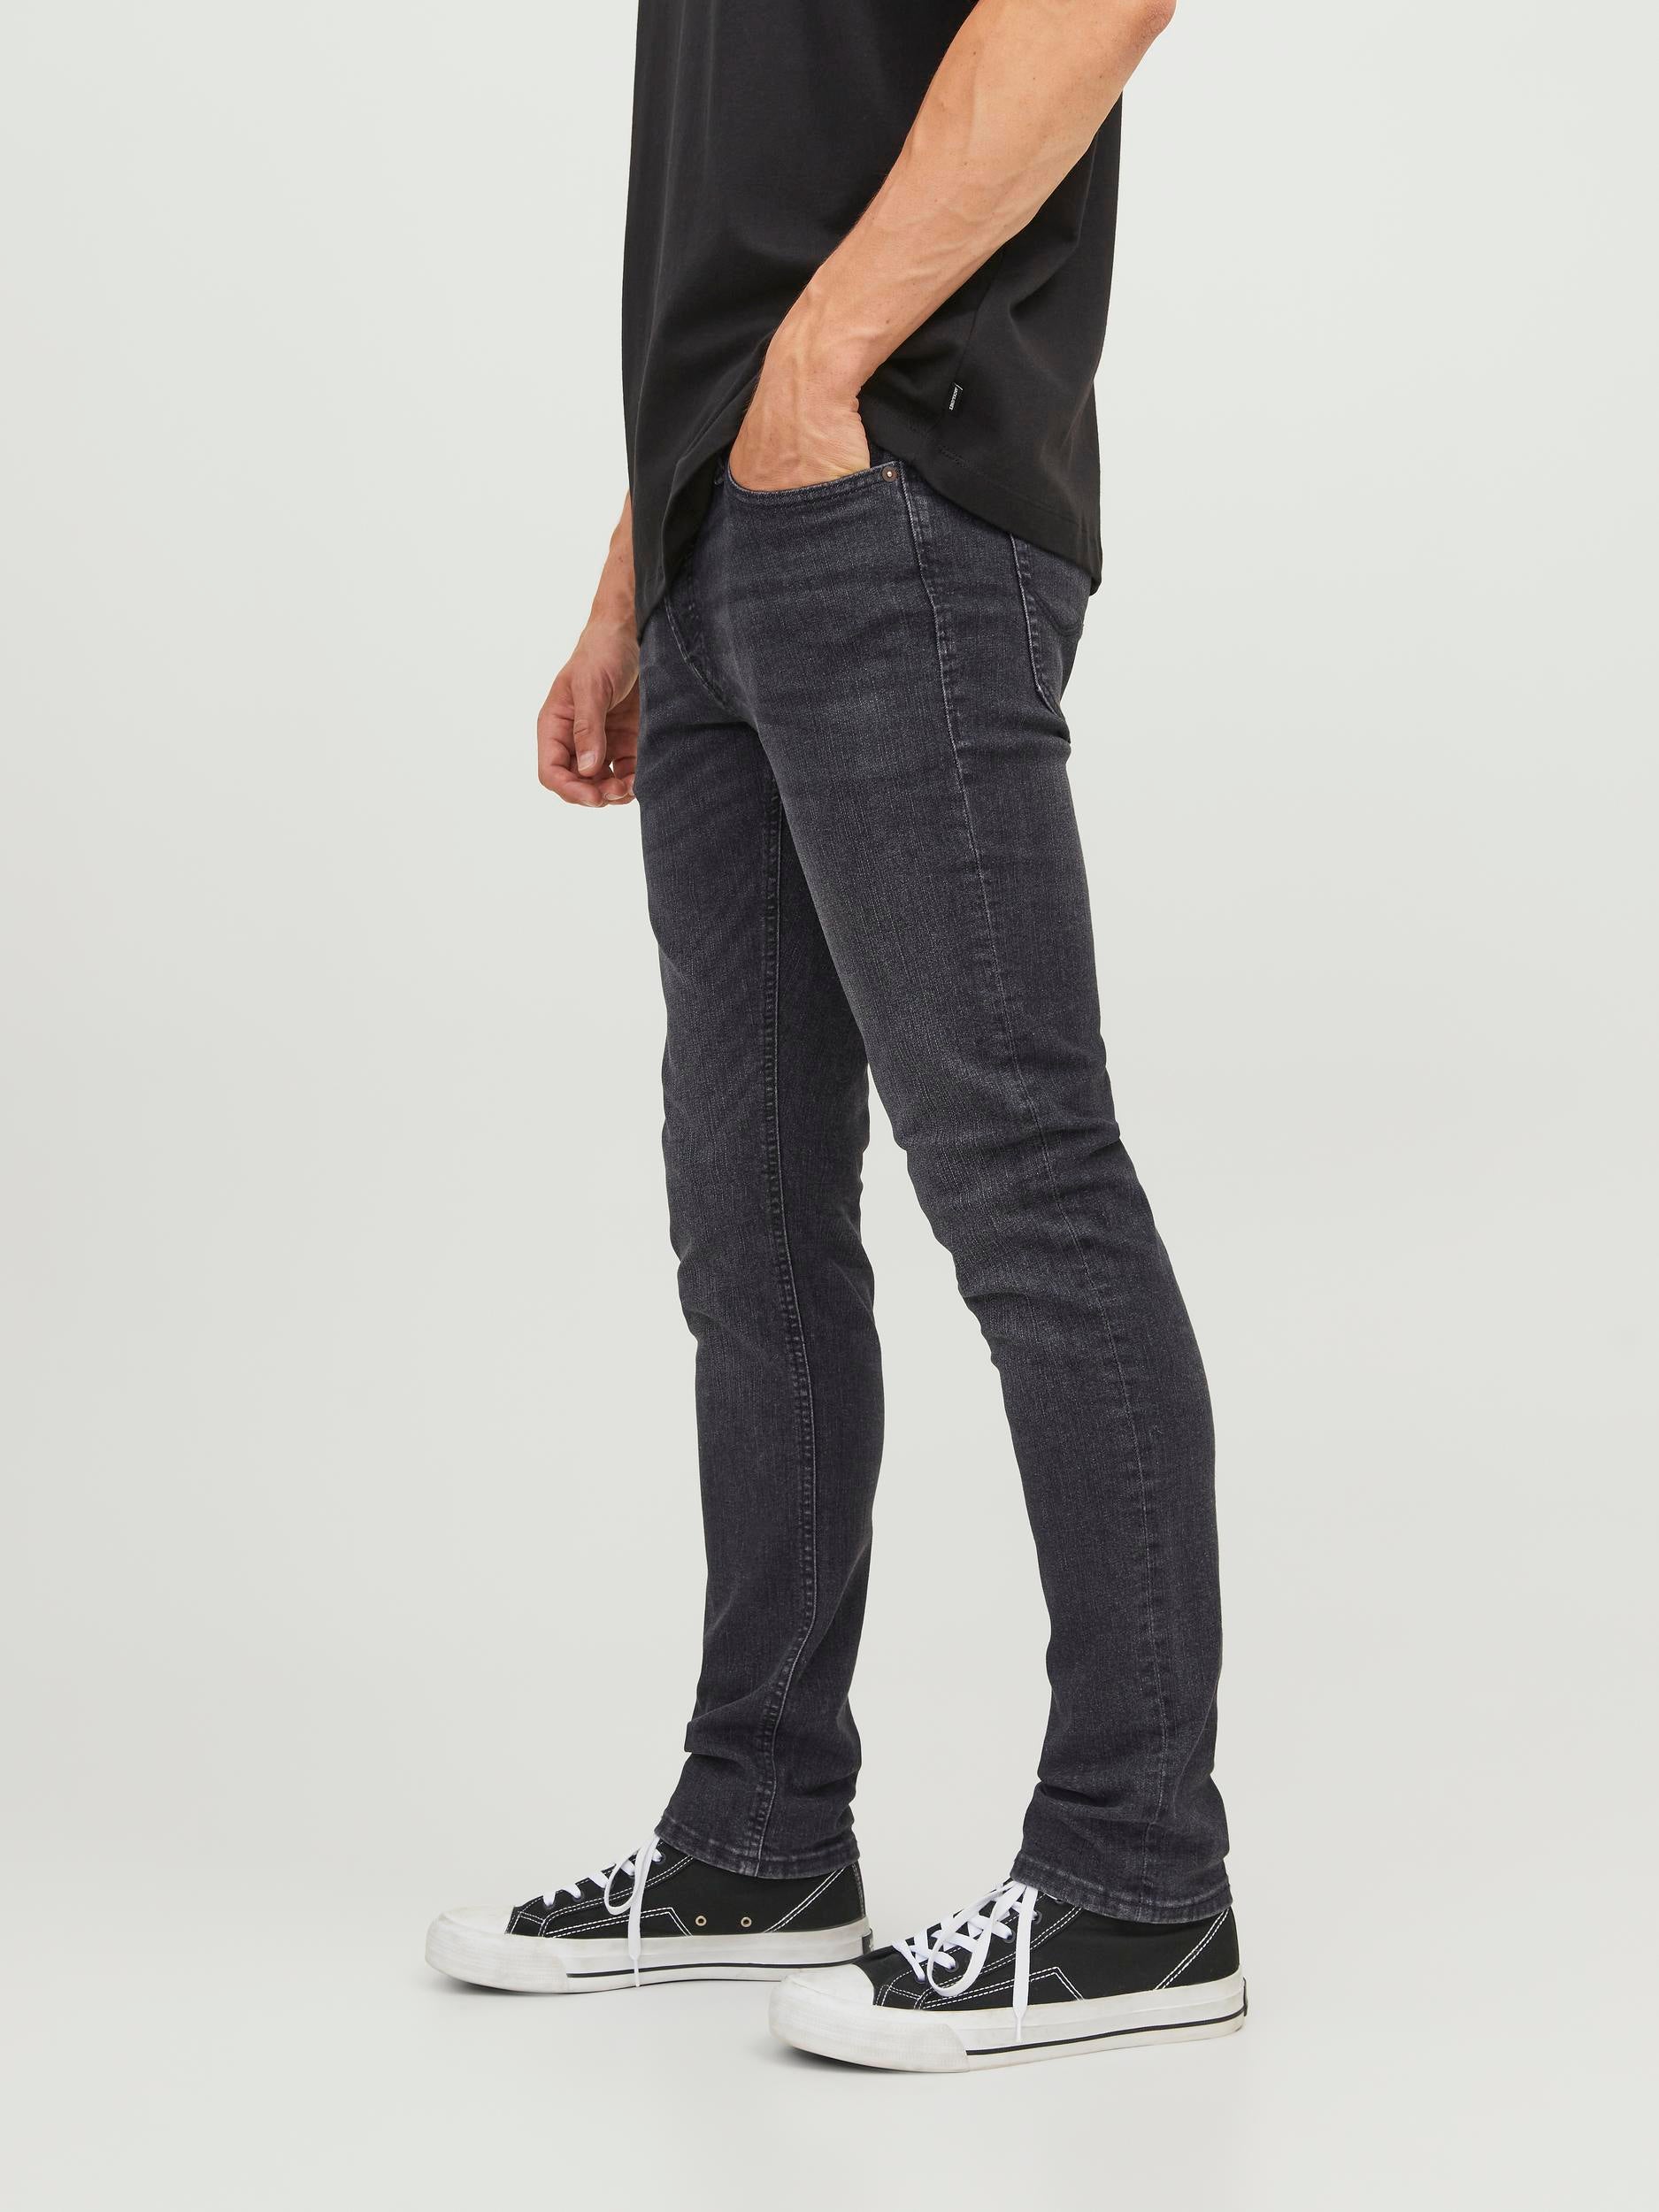 Jack & Jones Glenn Original 270 Slim Fit Jeans Black Denim - Raw Menswear